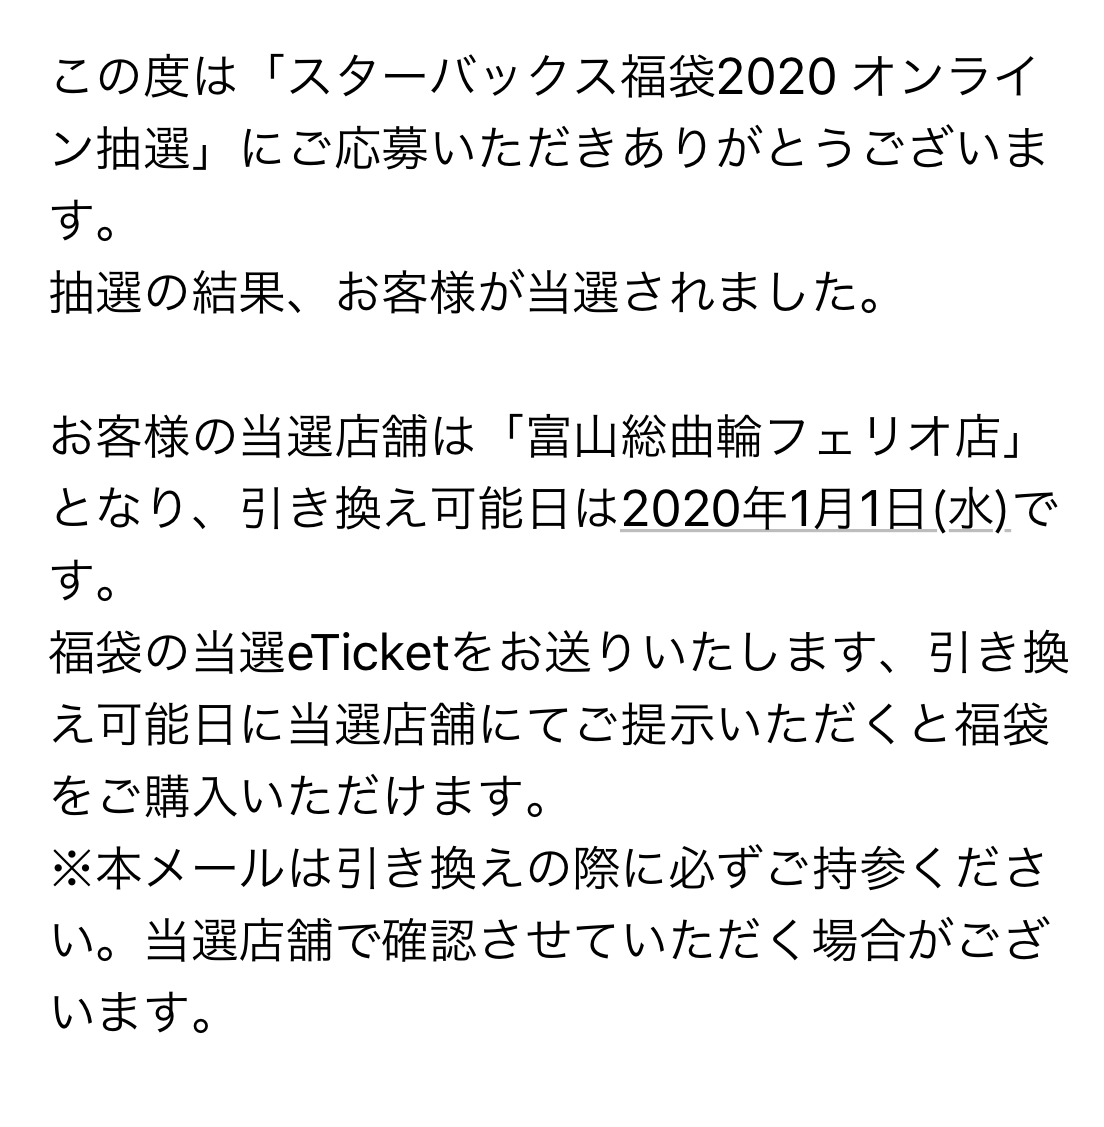 https://n-ko.jp/staffblog/2019/12/27/20191212_024951000_iOS%20%282%29.png